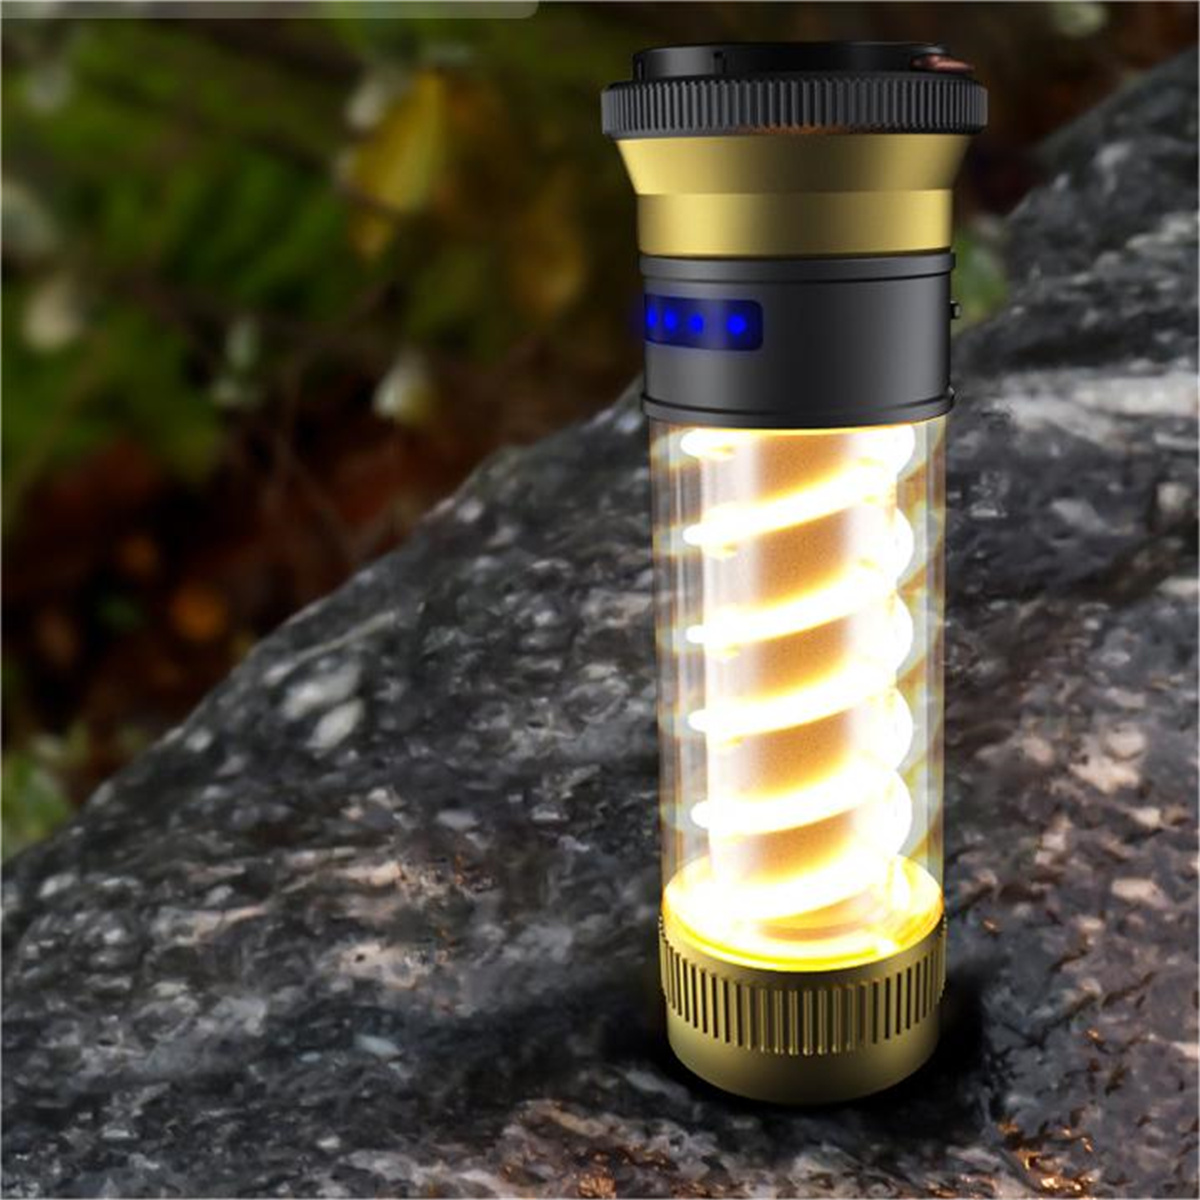 UWOT Outdoor-Taschenlampe: Stromverbrauchsbeständig, Doppelspirallicht, tragbar,Gold wasserdicht und Taschenlampe